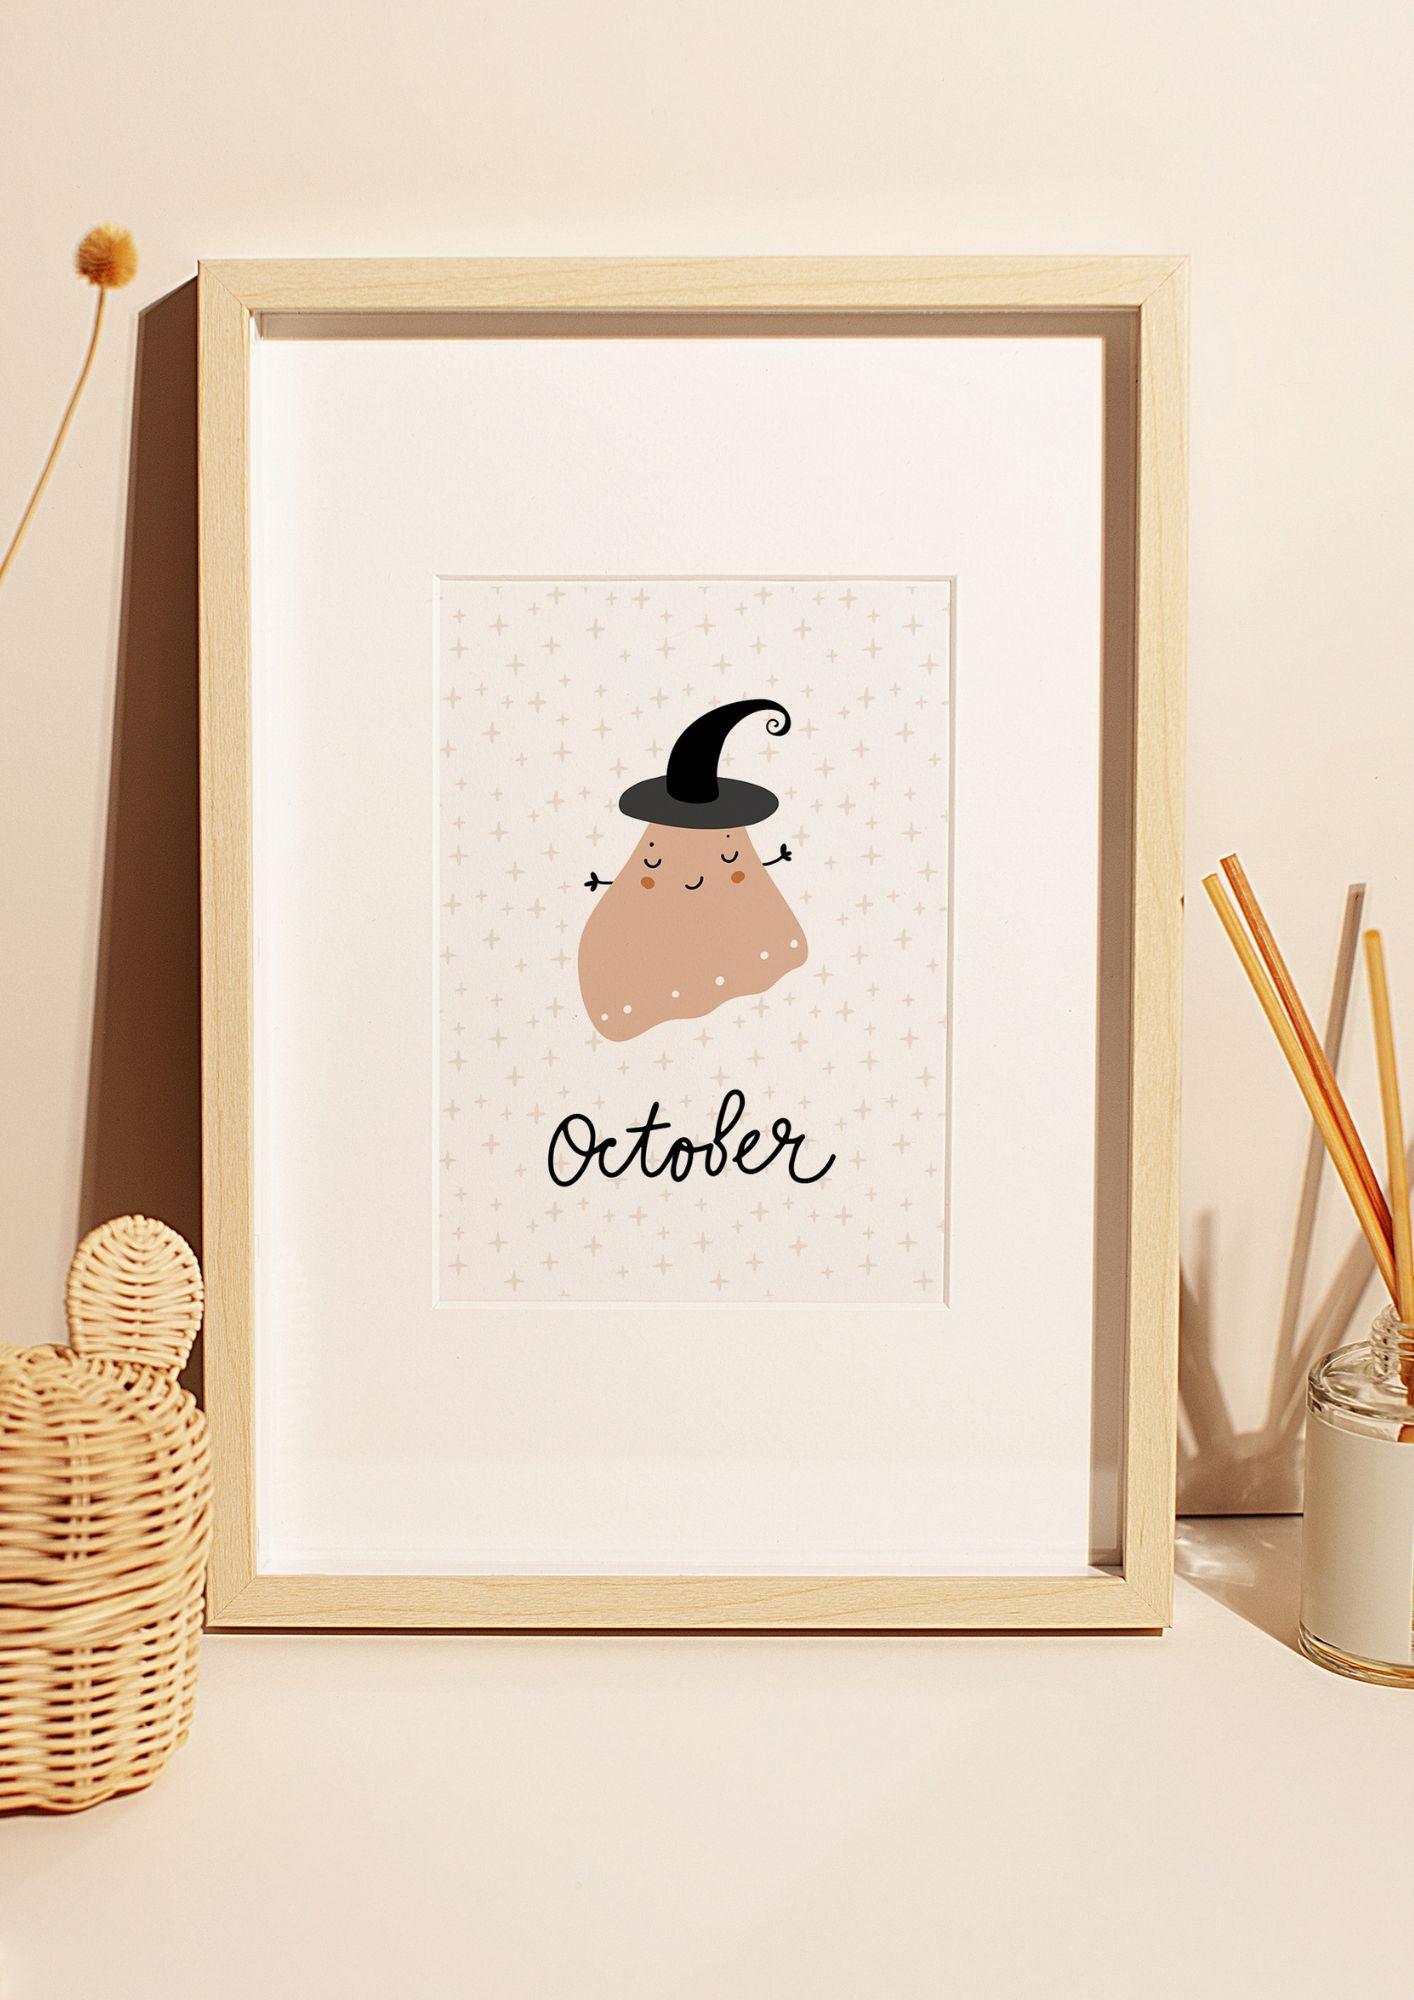 October - The Ditzy Dodo